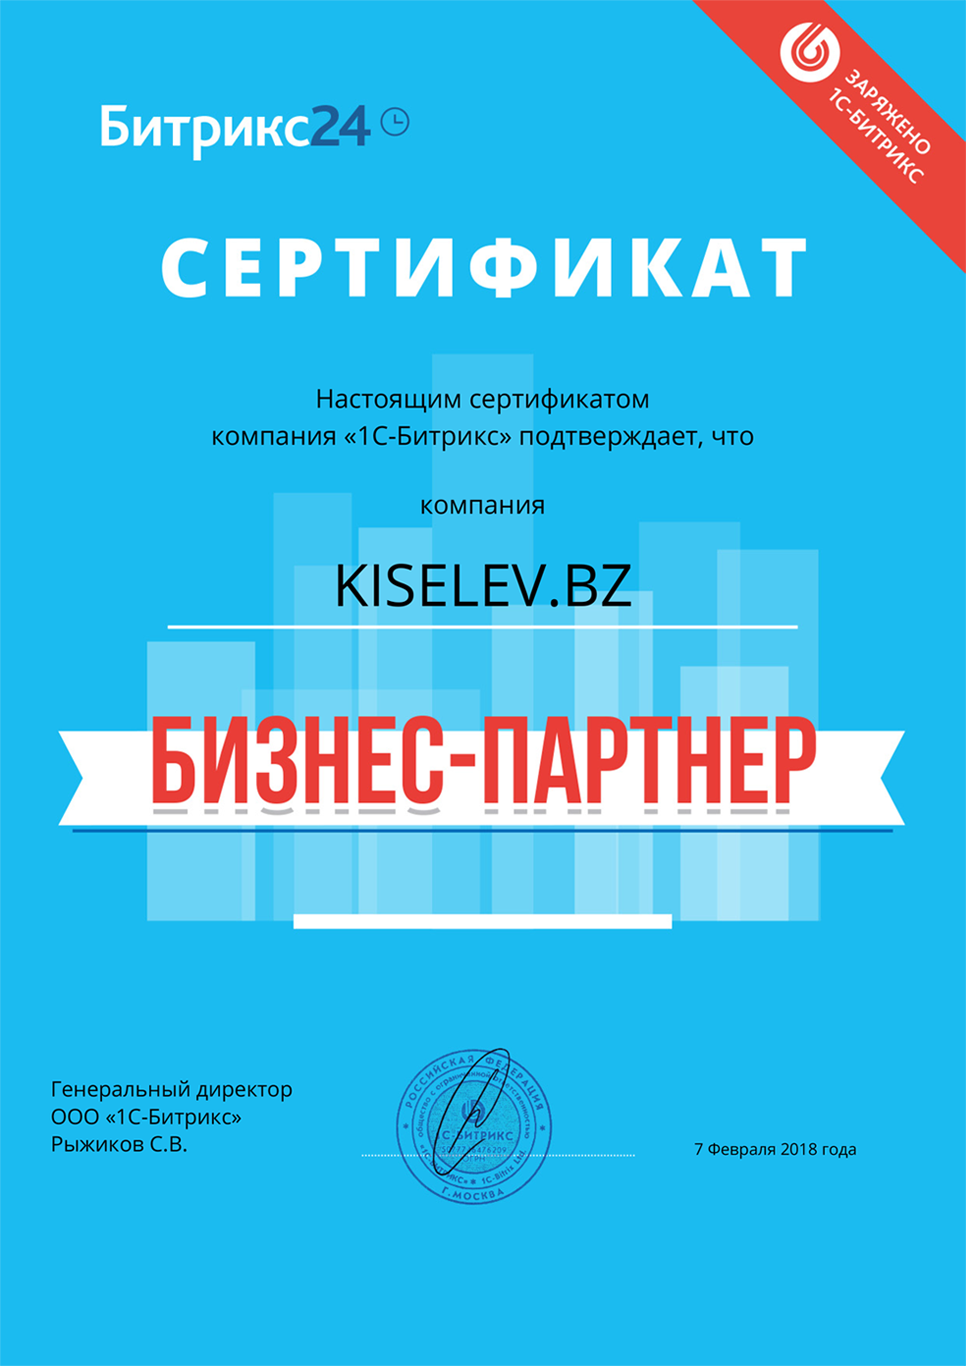 Сертификат партнёра по АМОСРМ в Шарье